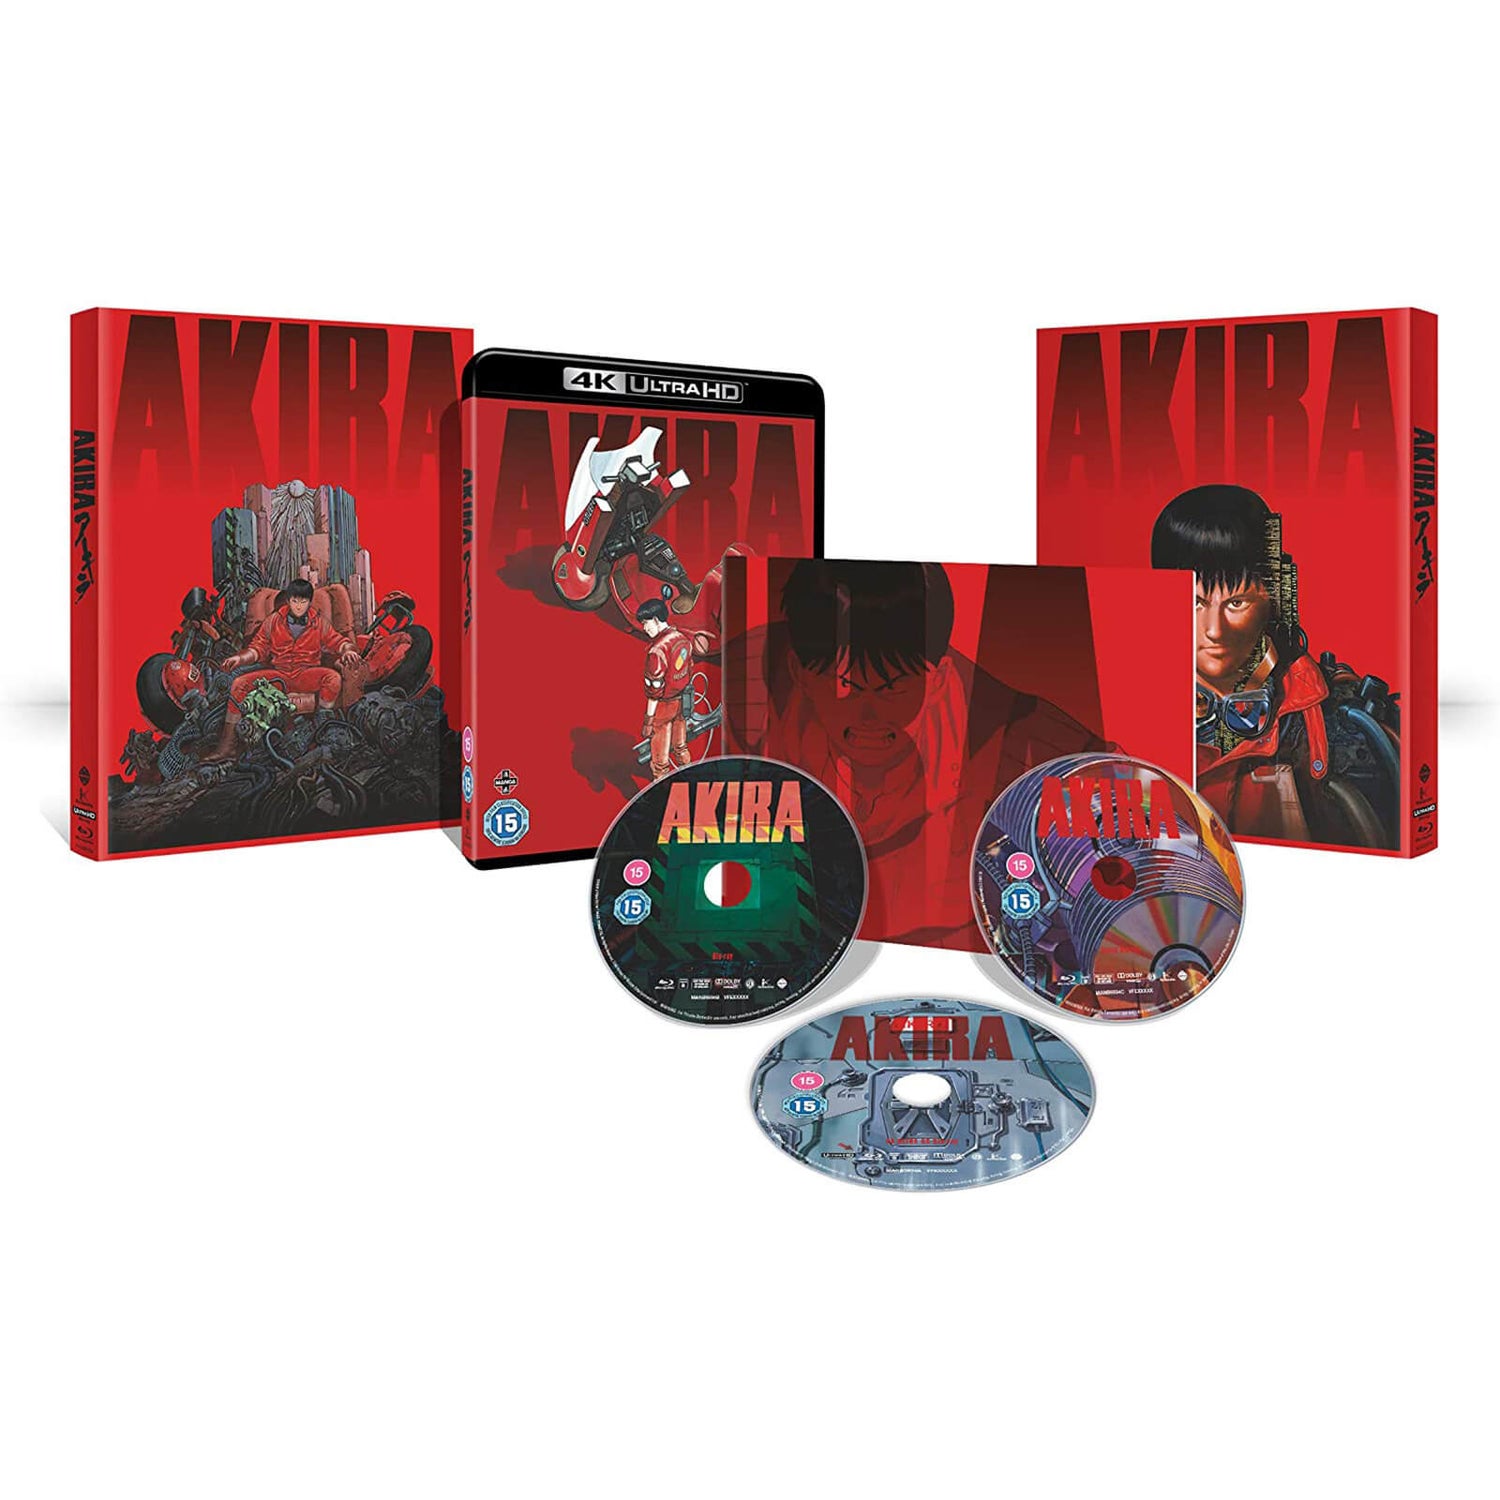 AKIRA - Limited Edition 4K Ultra HD (Includes 2D Blu-ray) 4K - Zavvi UK